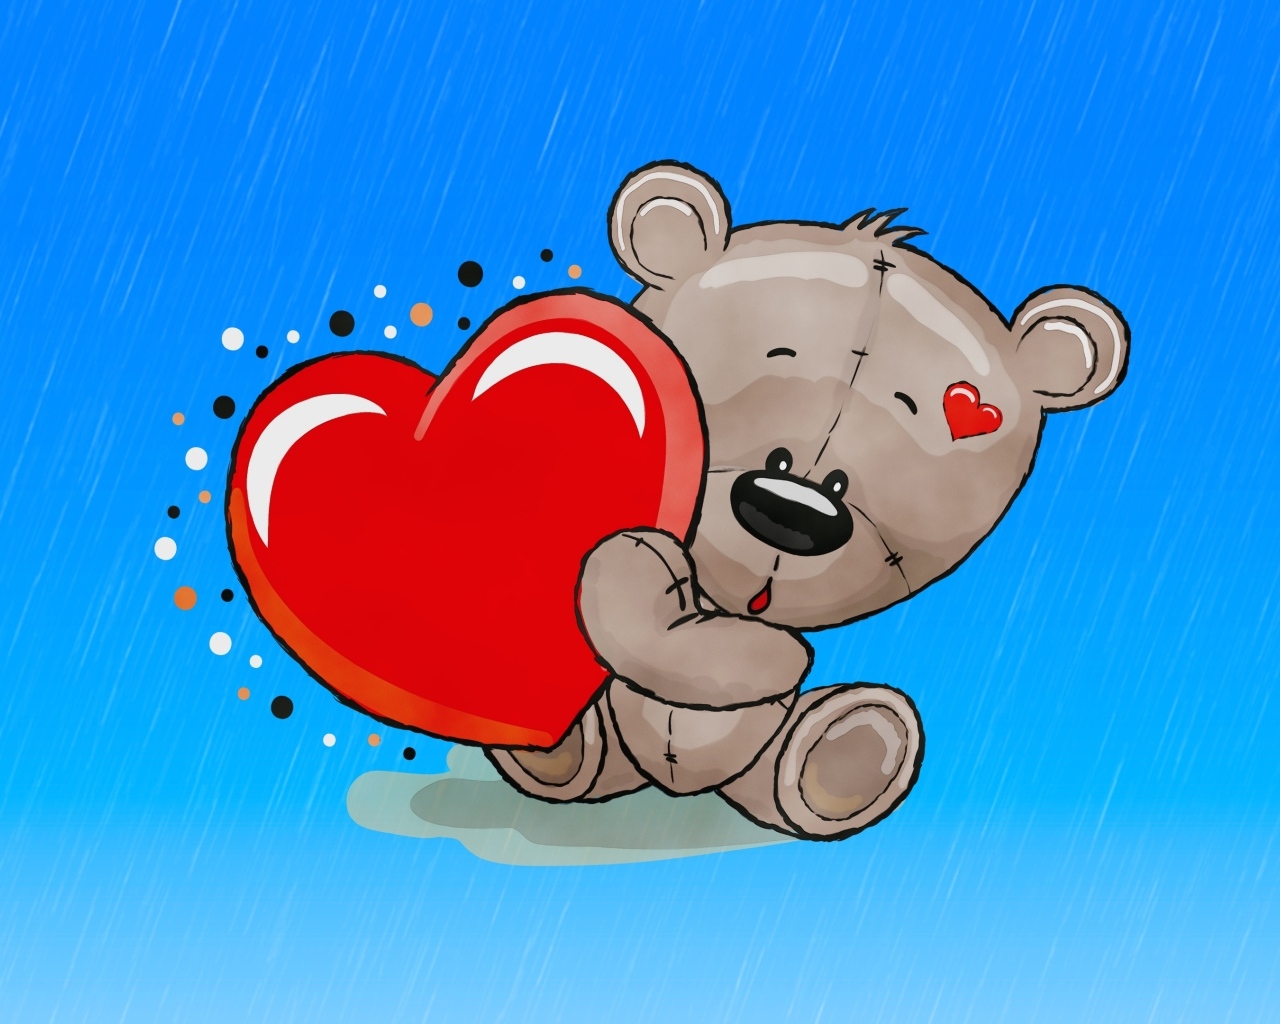 Нарисованный медвежонок с красным сердцем на голубом фоне